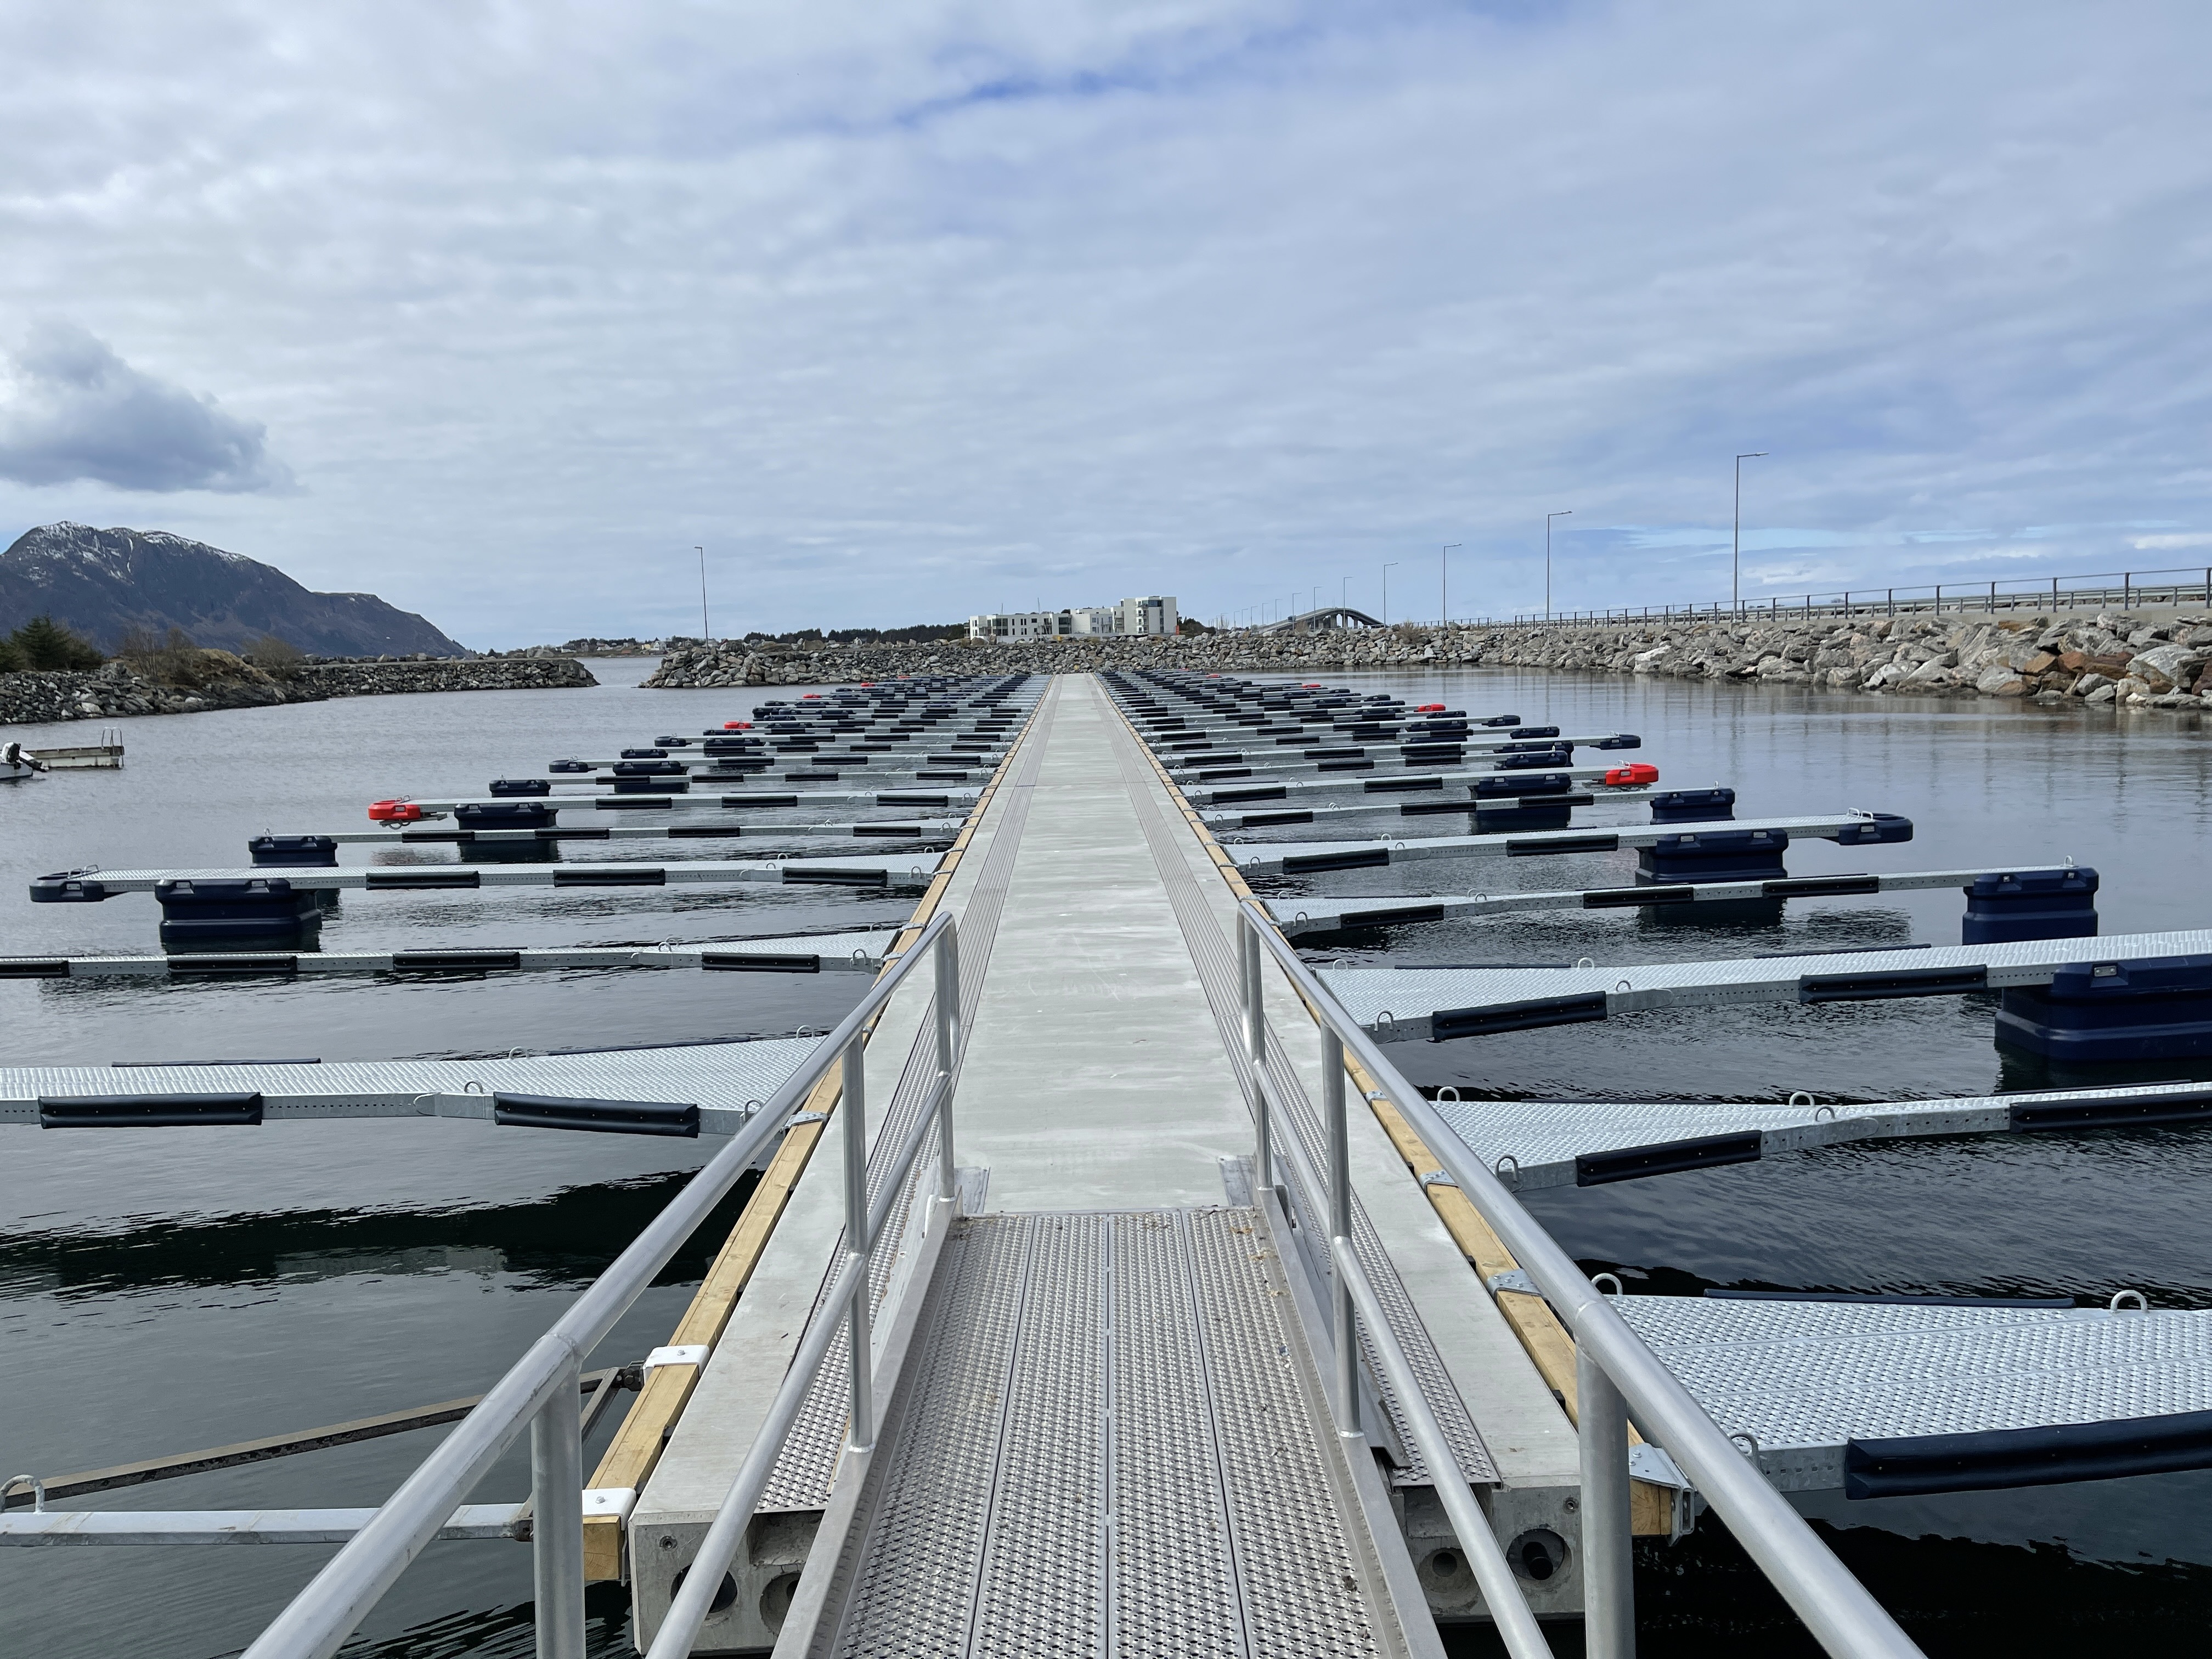 https://marinasolutions.no/uploads/Ytterland-småbåtforening_Valderøy_Marina-Solutions-AS-5.JPG